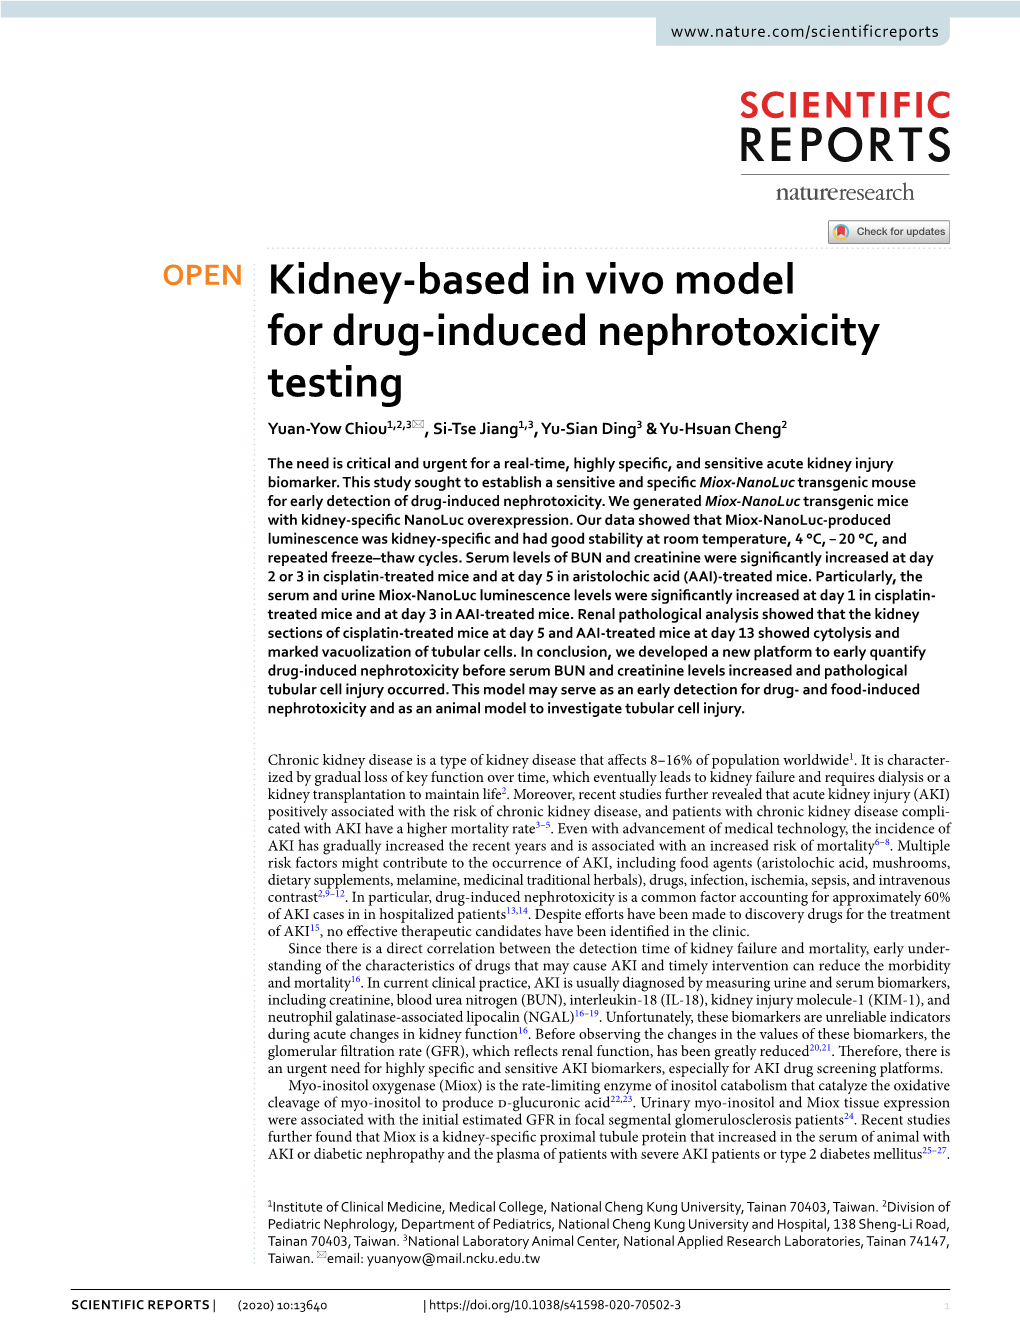 Kidney-Based in Vivo Model for Drug-Induced Nephrotoxicity Testing